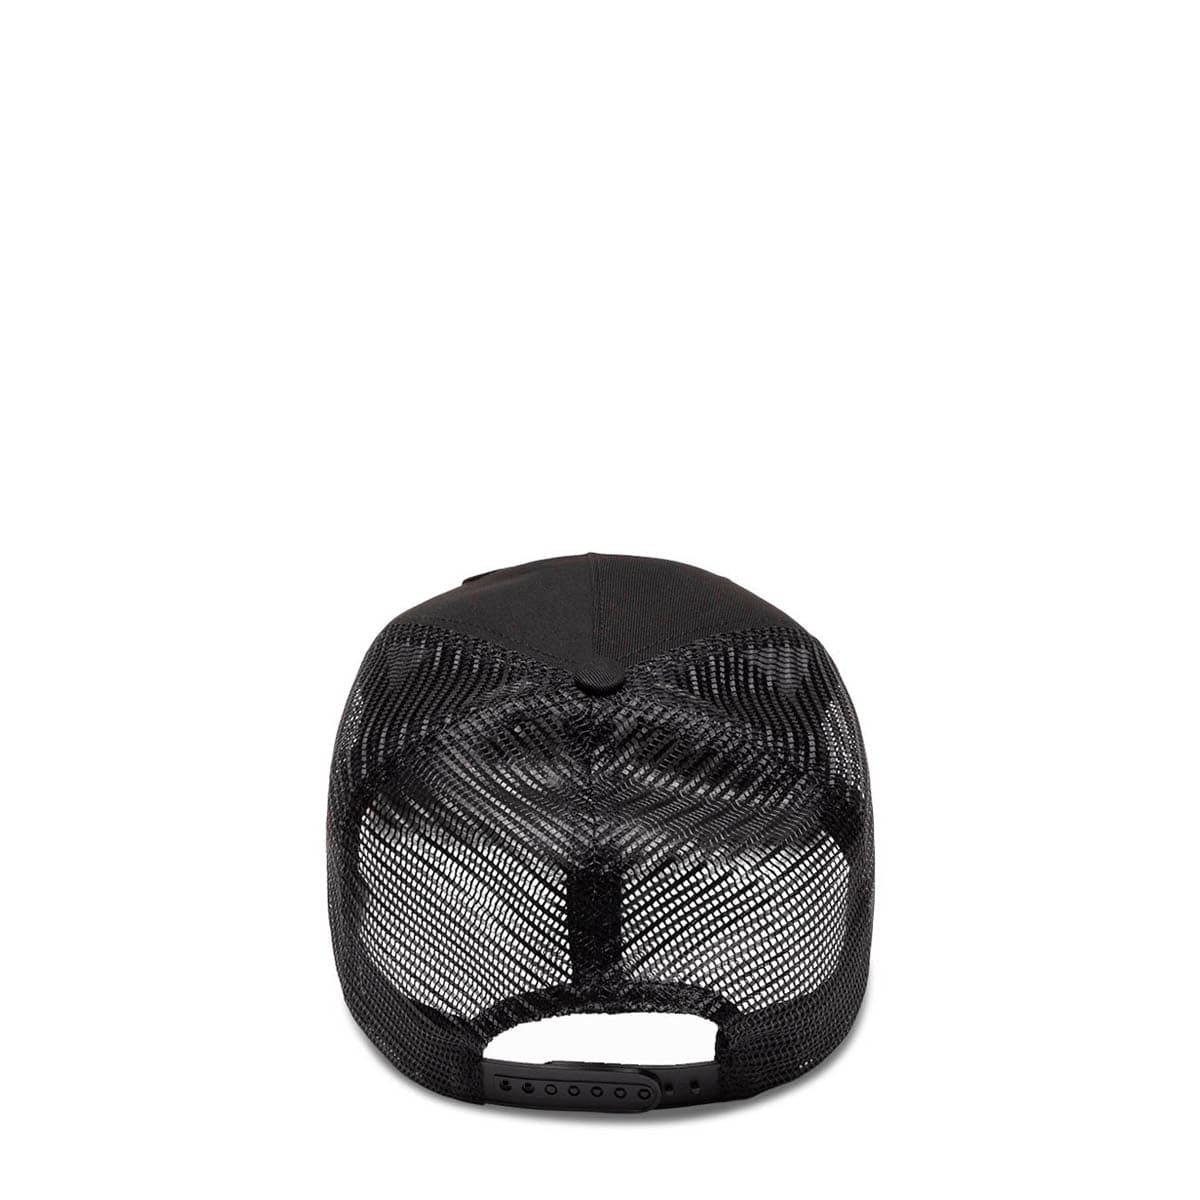 Rassvet Headwear BLACK / O/S PATCH TRUCKER CAP WOVEN